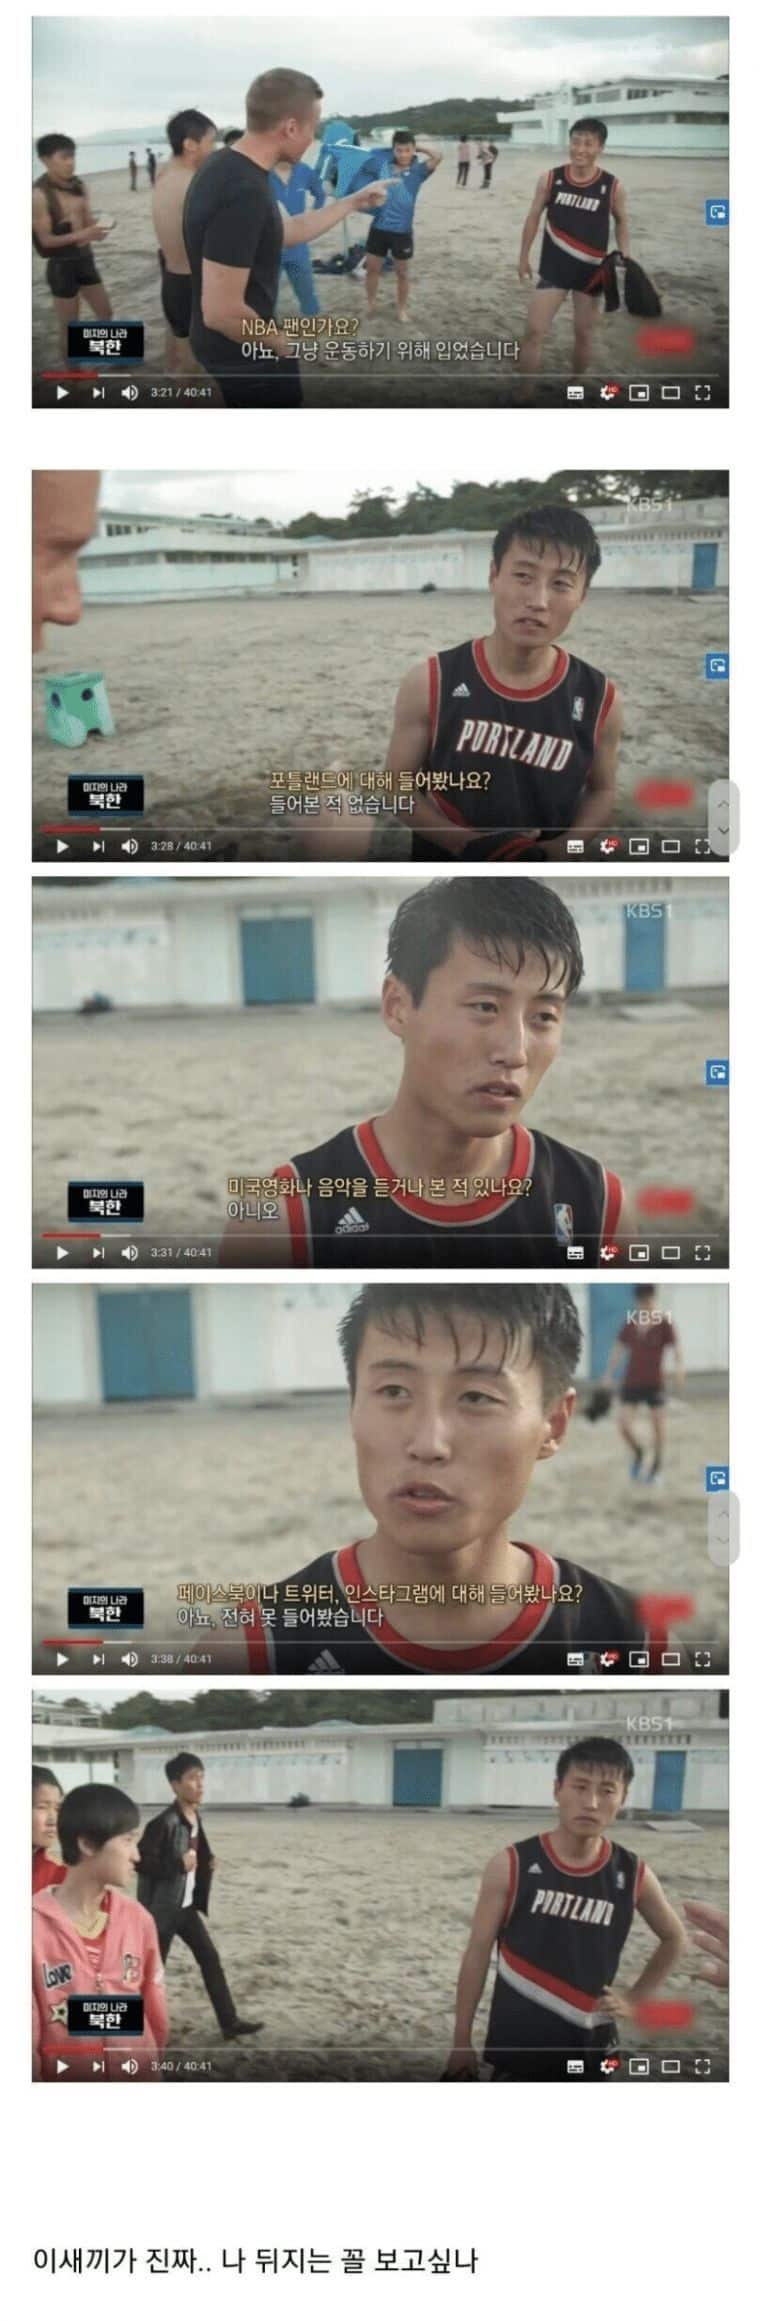 살아남기위해 회피능력에 몰빵한 북한남자
            ㄷㄷ